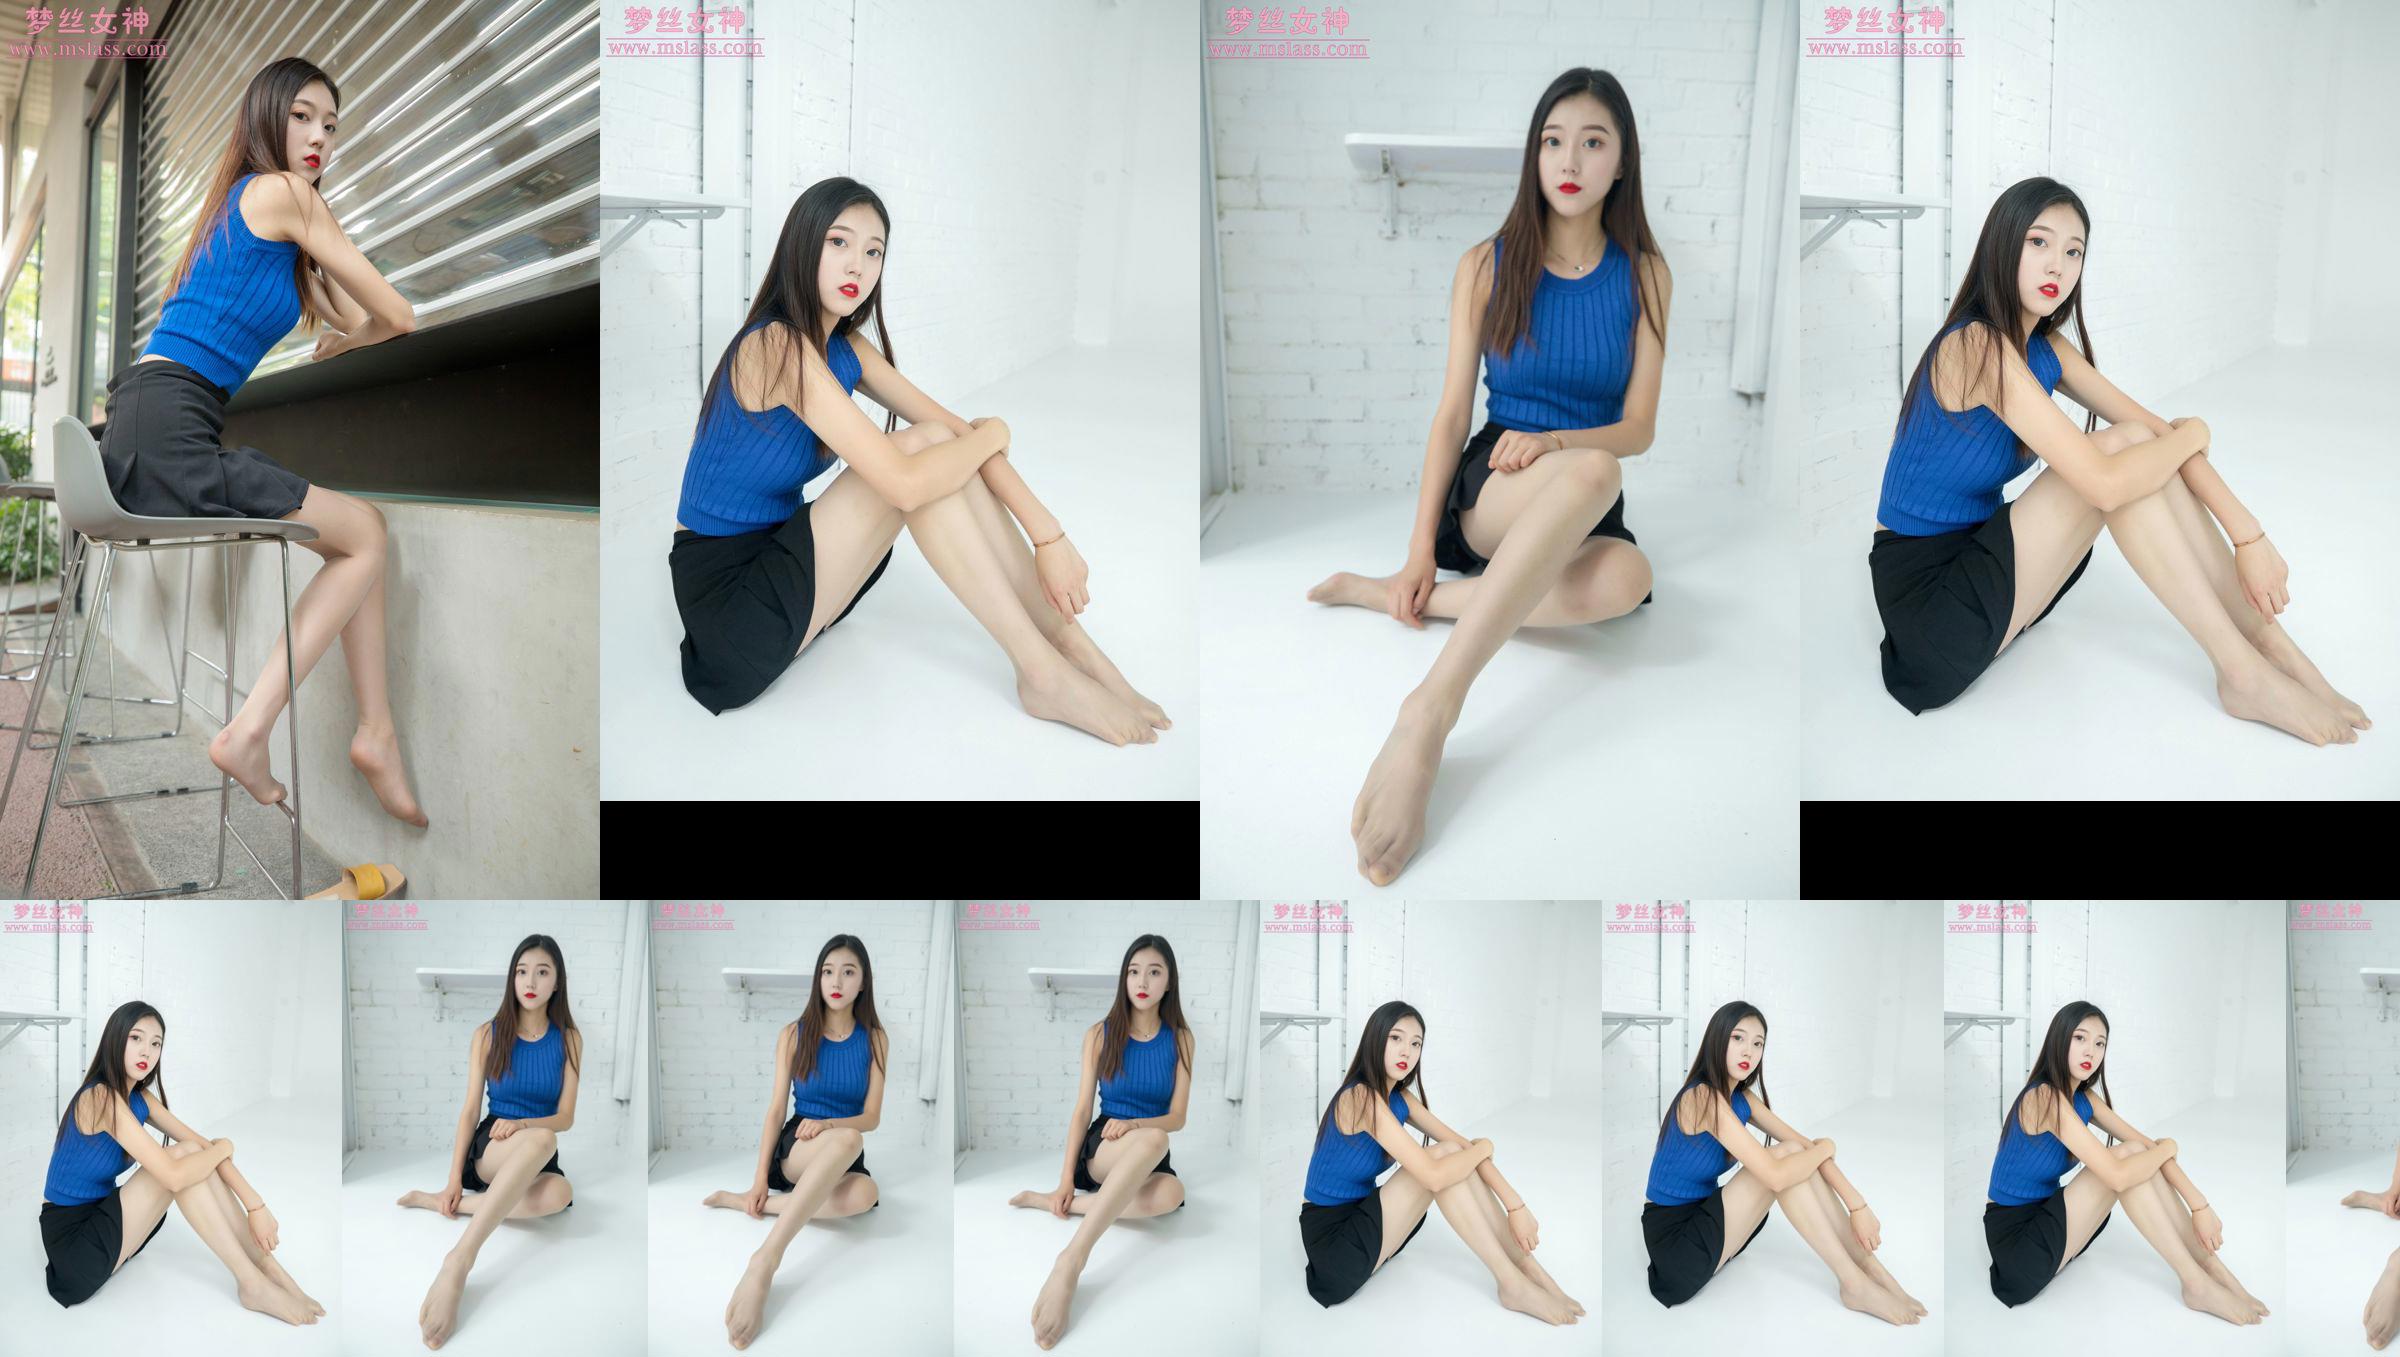 [MSLASS] Shu Lei Art Space Calze Beautiful Legs No.7c09b6 Pagina 2